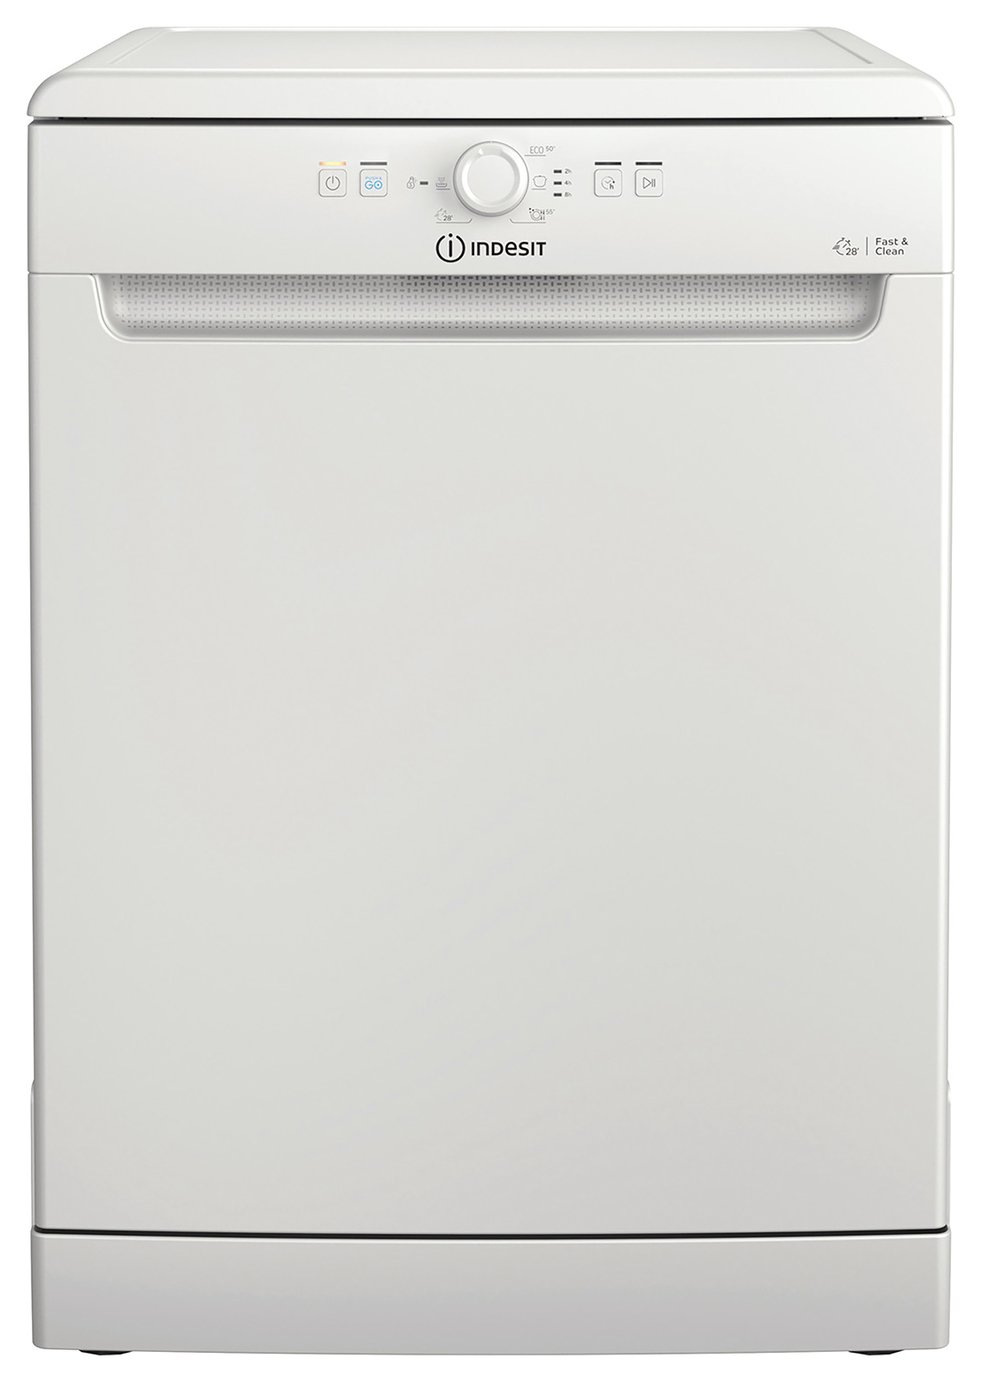 Indesit D2F HK26 UK Full Size Dishwasher - White